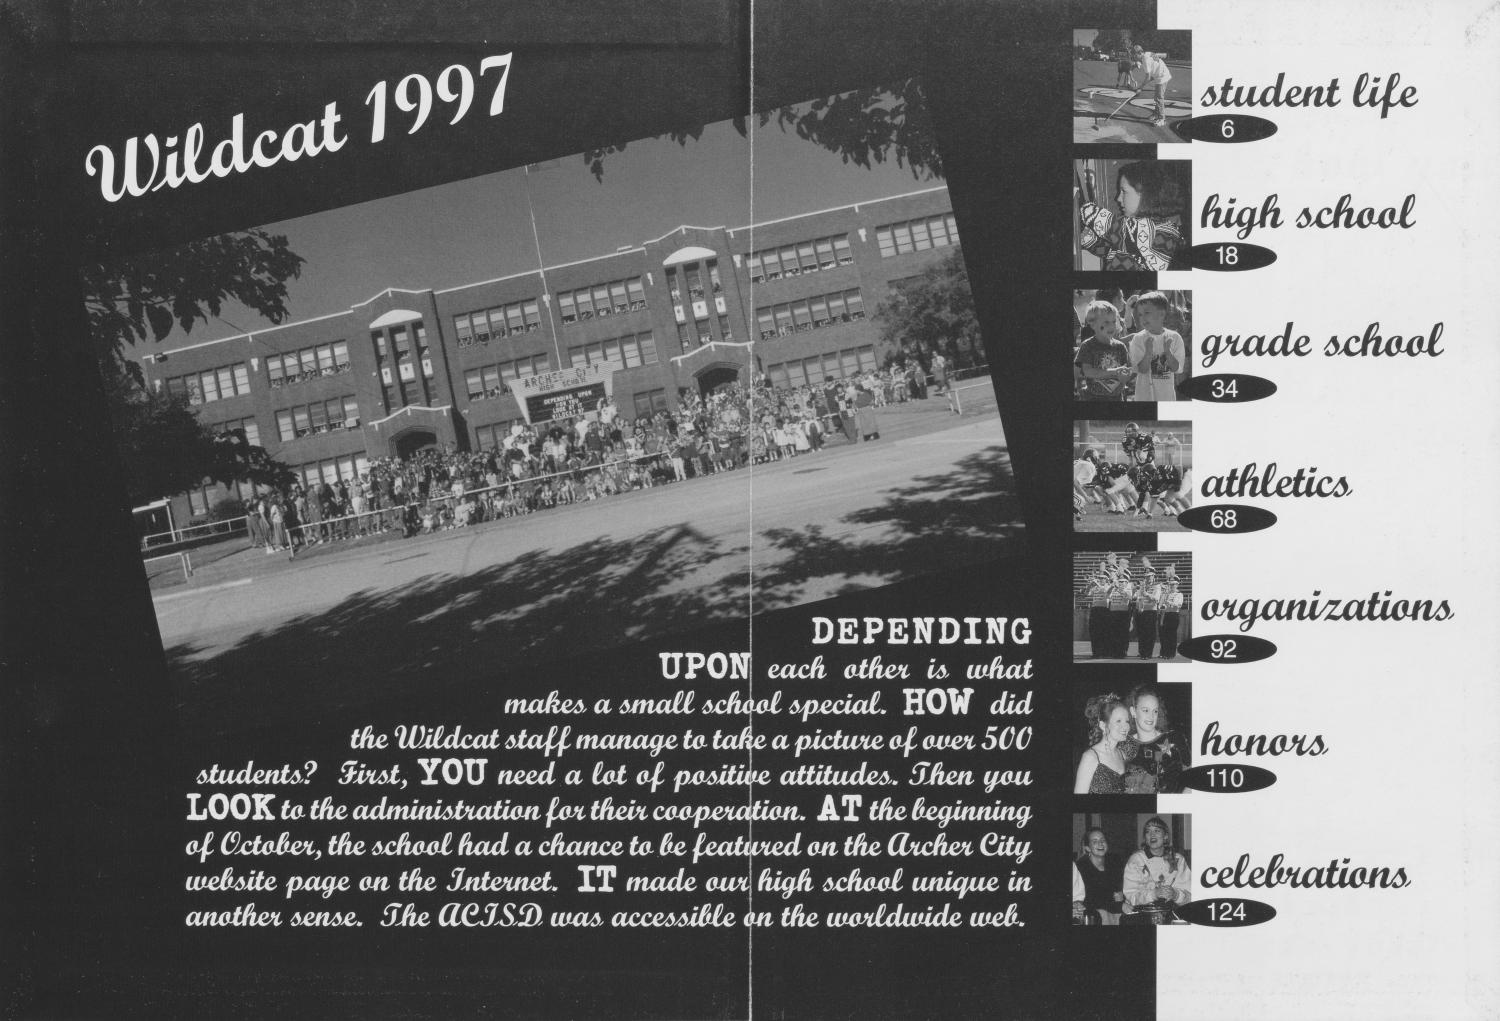 The Wildcat, Yearbook of Archer City Schools, 1997
                                                
                                                    None
                                                